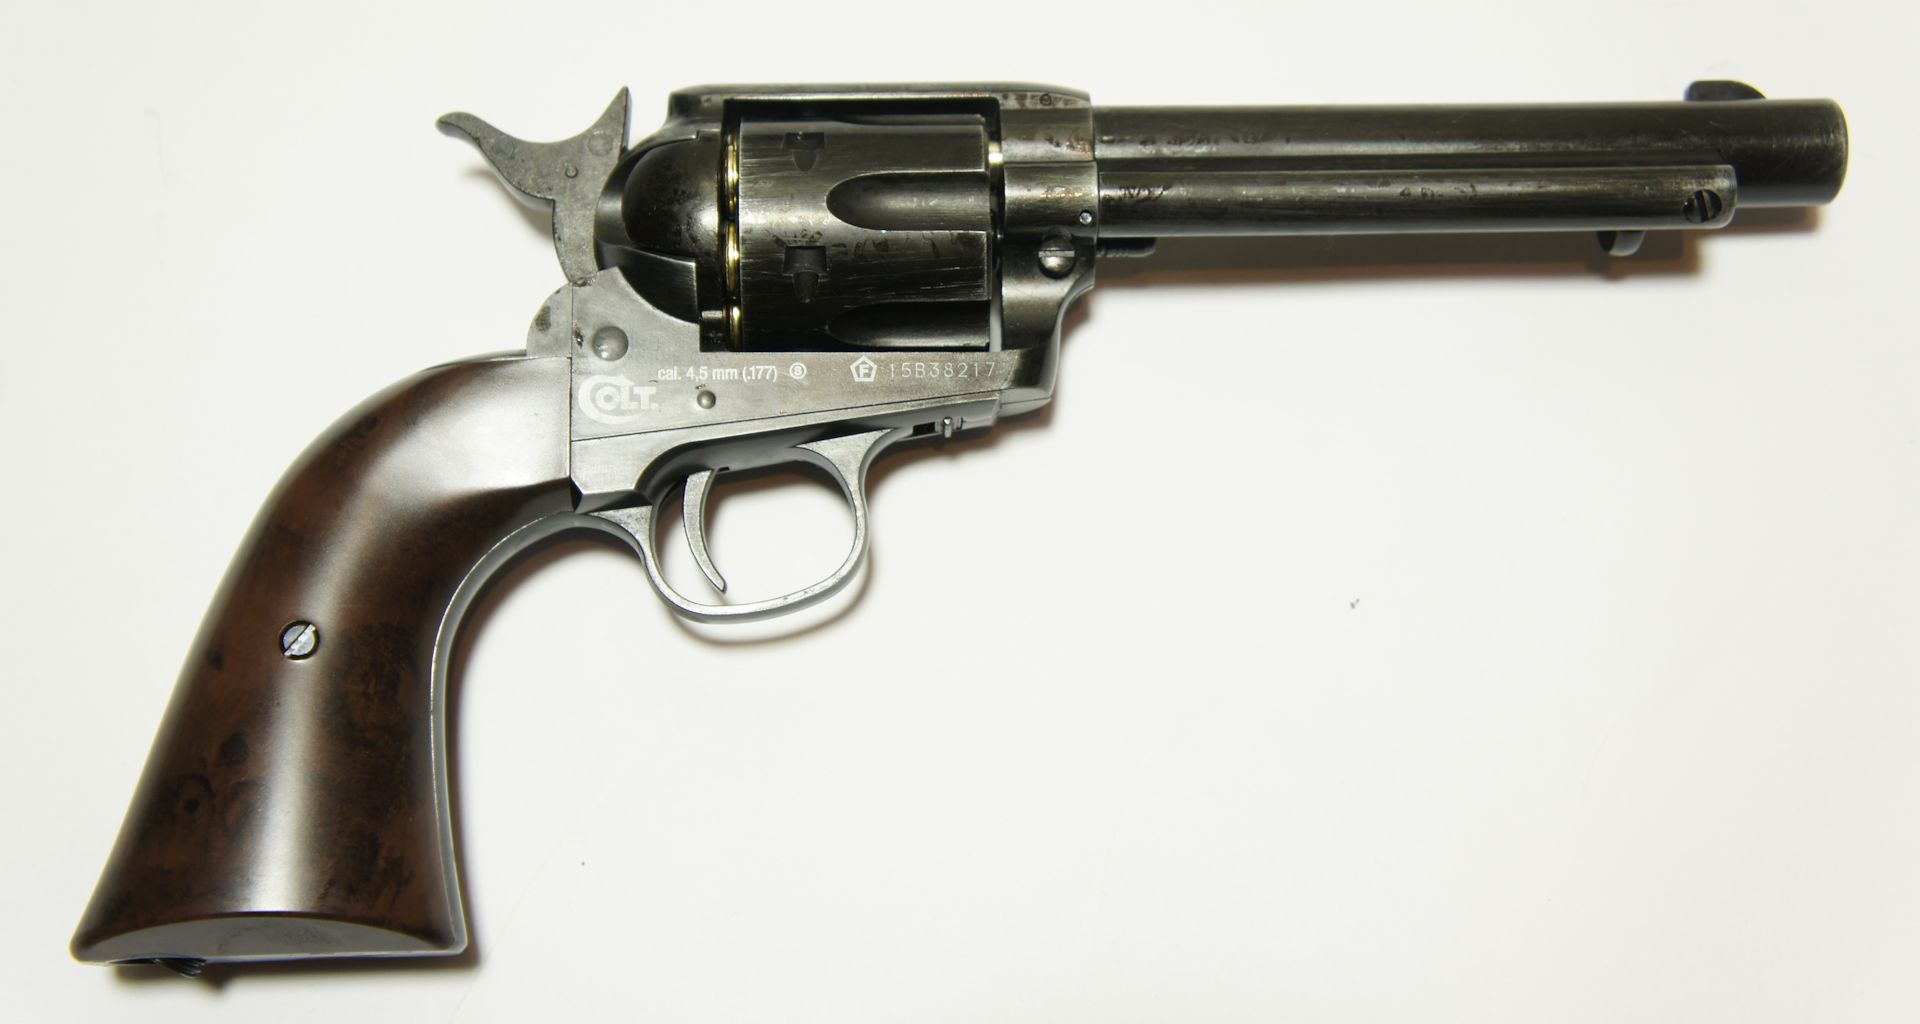 Achtung! Der Revolver hat eine Sicherung. Die Waffe wird in gesichertem Zustand geliefert und so lässt sich der Hahn nicht spannen.